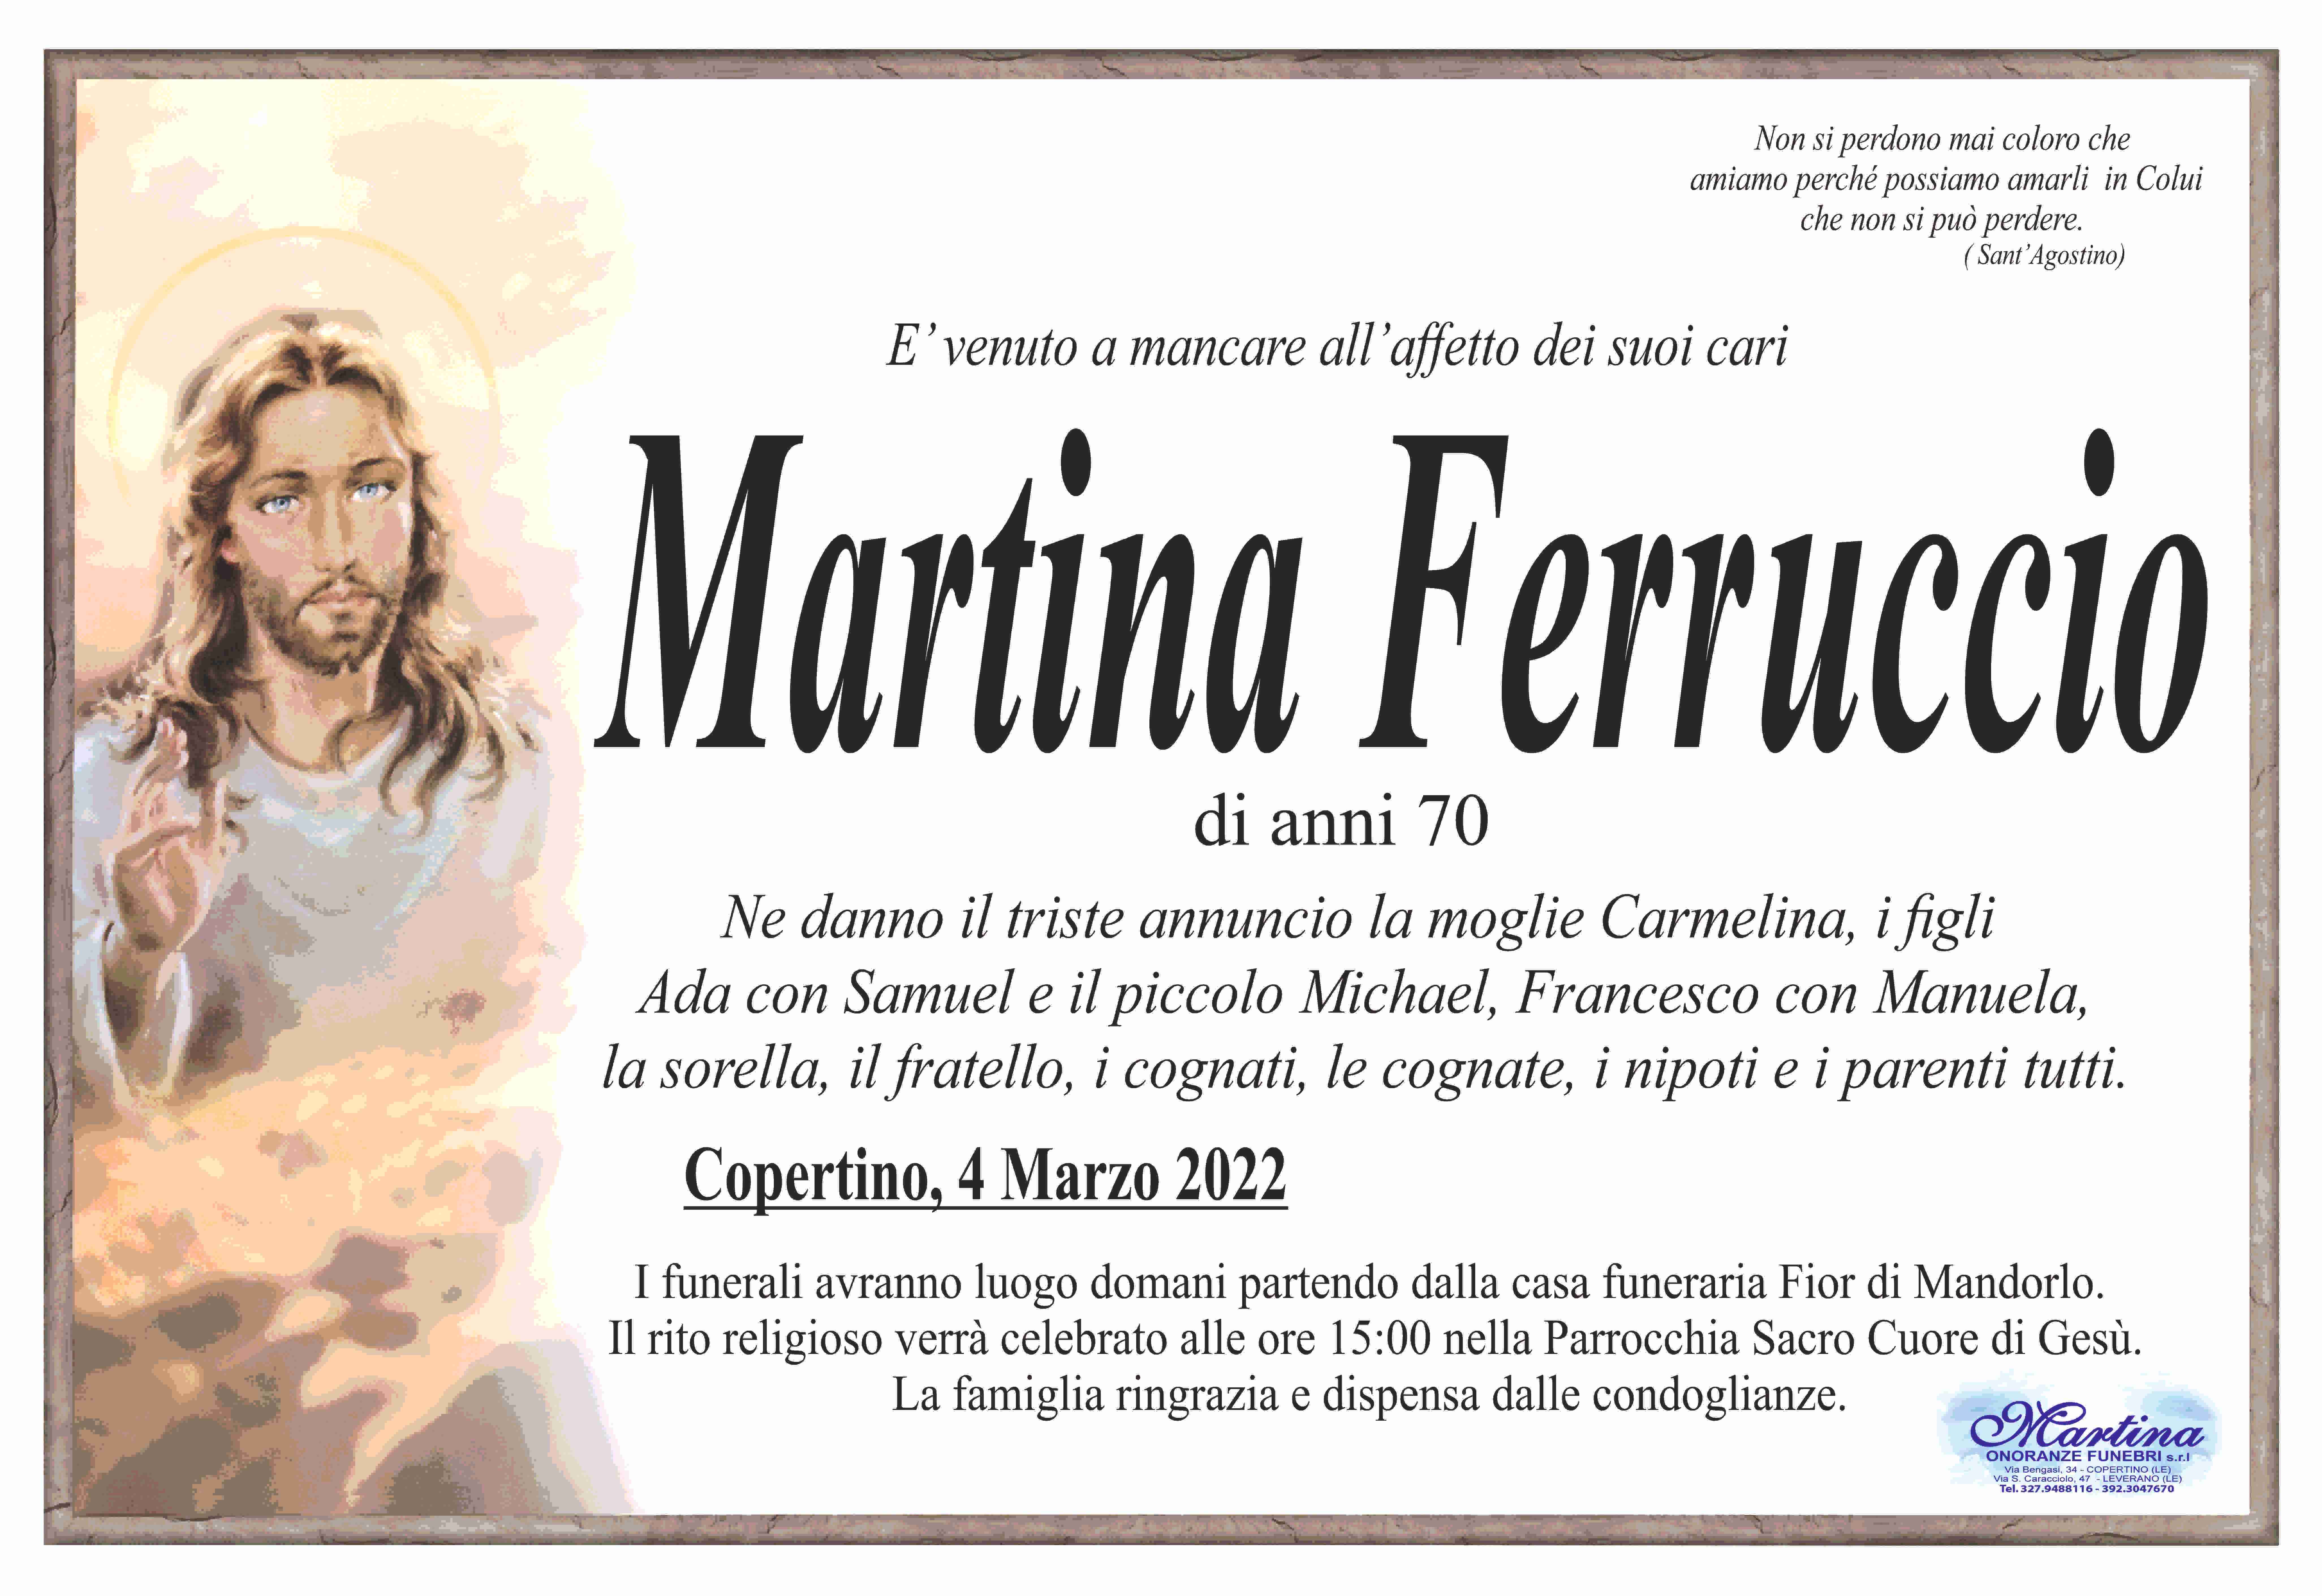 Ferruccio Martina